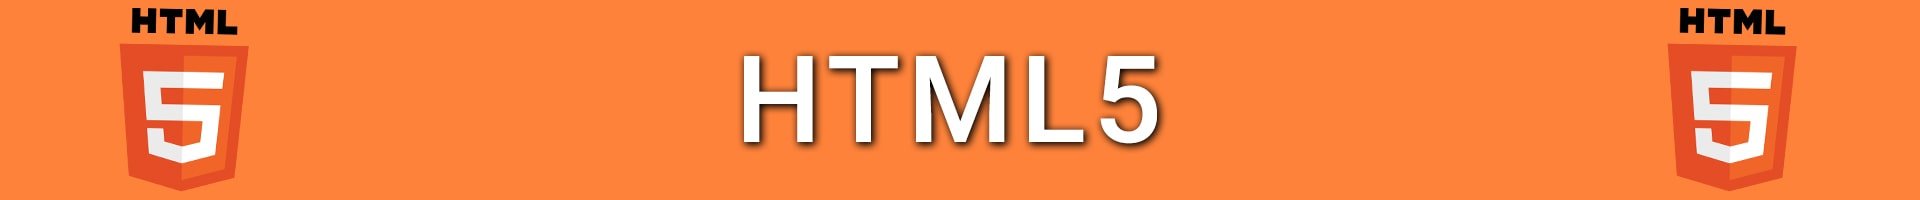 Curso online gratuito HTML5.